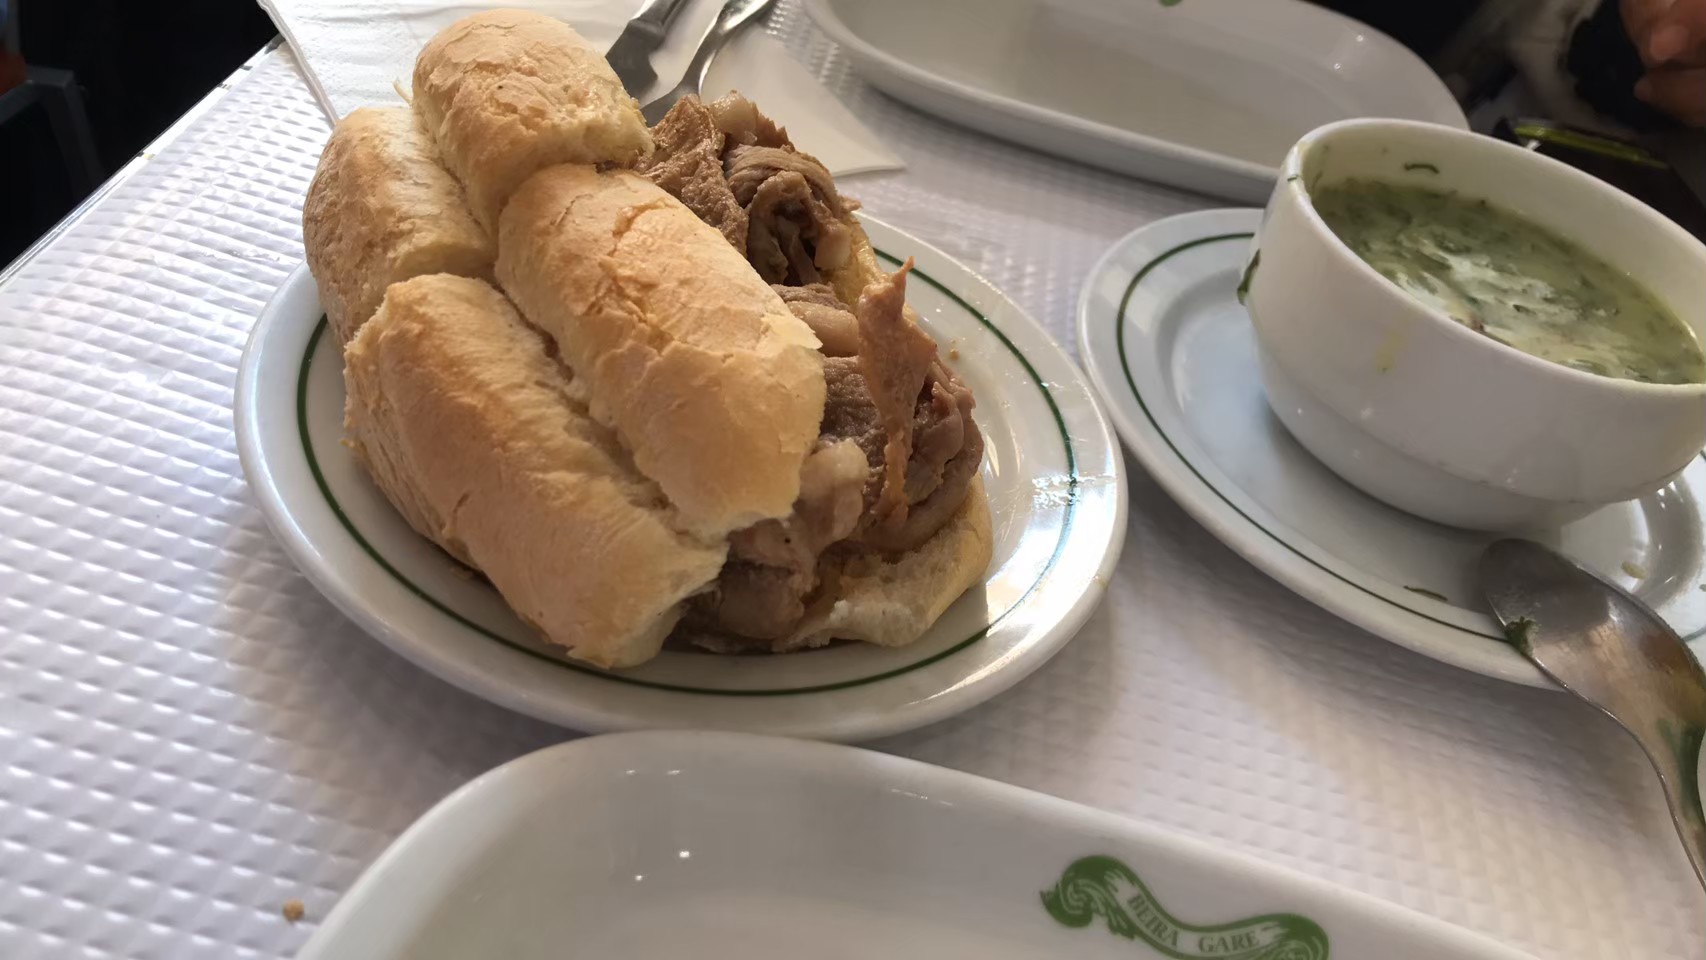 平岩さんのポルトガルでの食べ歩き記録から。「リスボンの有名なカフェのボリュームたっぷりのビファーナと、カルドヴェルデという定番スープです」